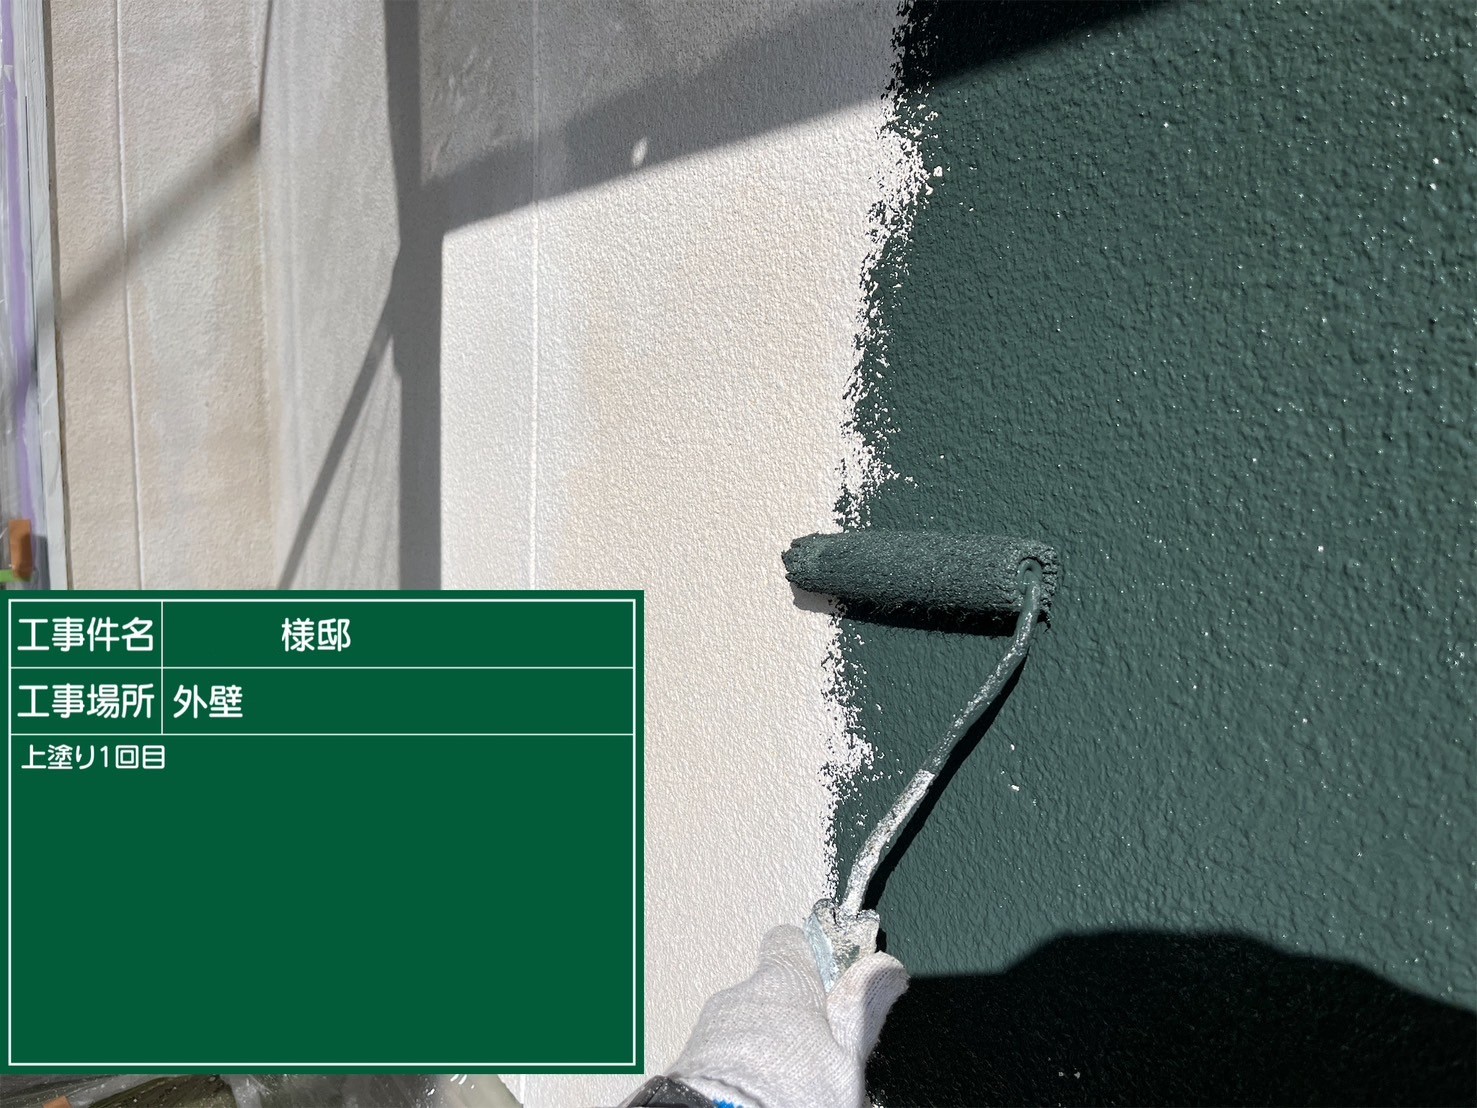 福岡県太宰府市朱雀のH様借家でご希望されていた15年以上の耐久があるエシカルプロクールのシリコン塗料とピュアピュアシリコンで屋根と外壁をそれぞれ塗装していきます。2/23着工です。【HPより】